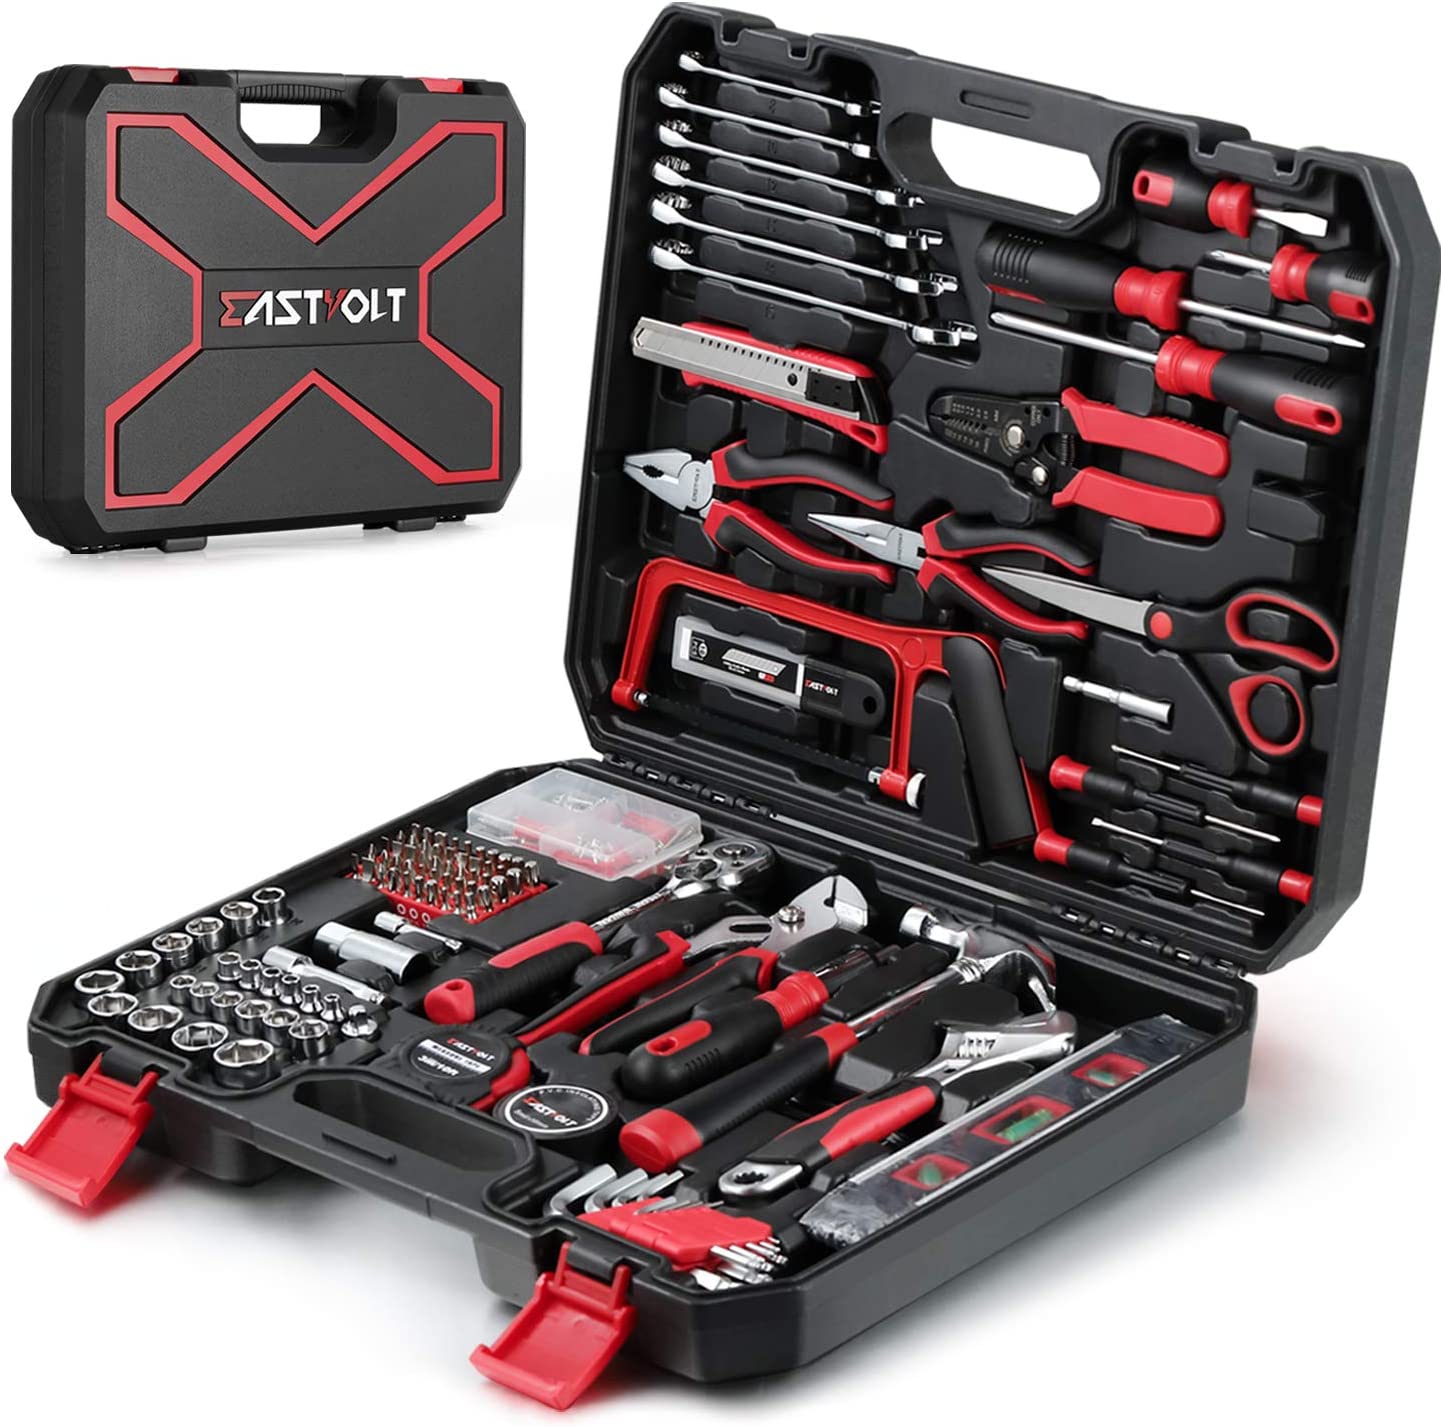 Eastvolt 218-Piece Household Tool Kit, Auto Repair Tool Set, Tool Kits 